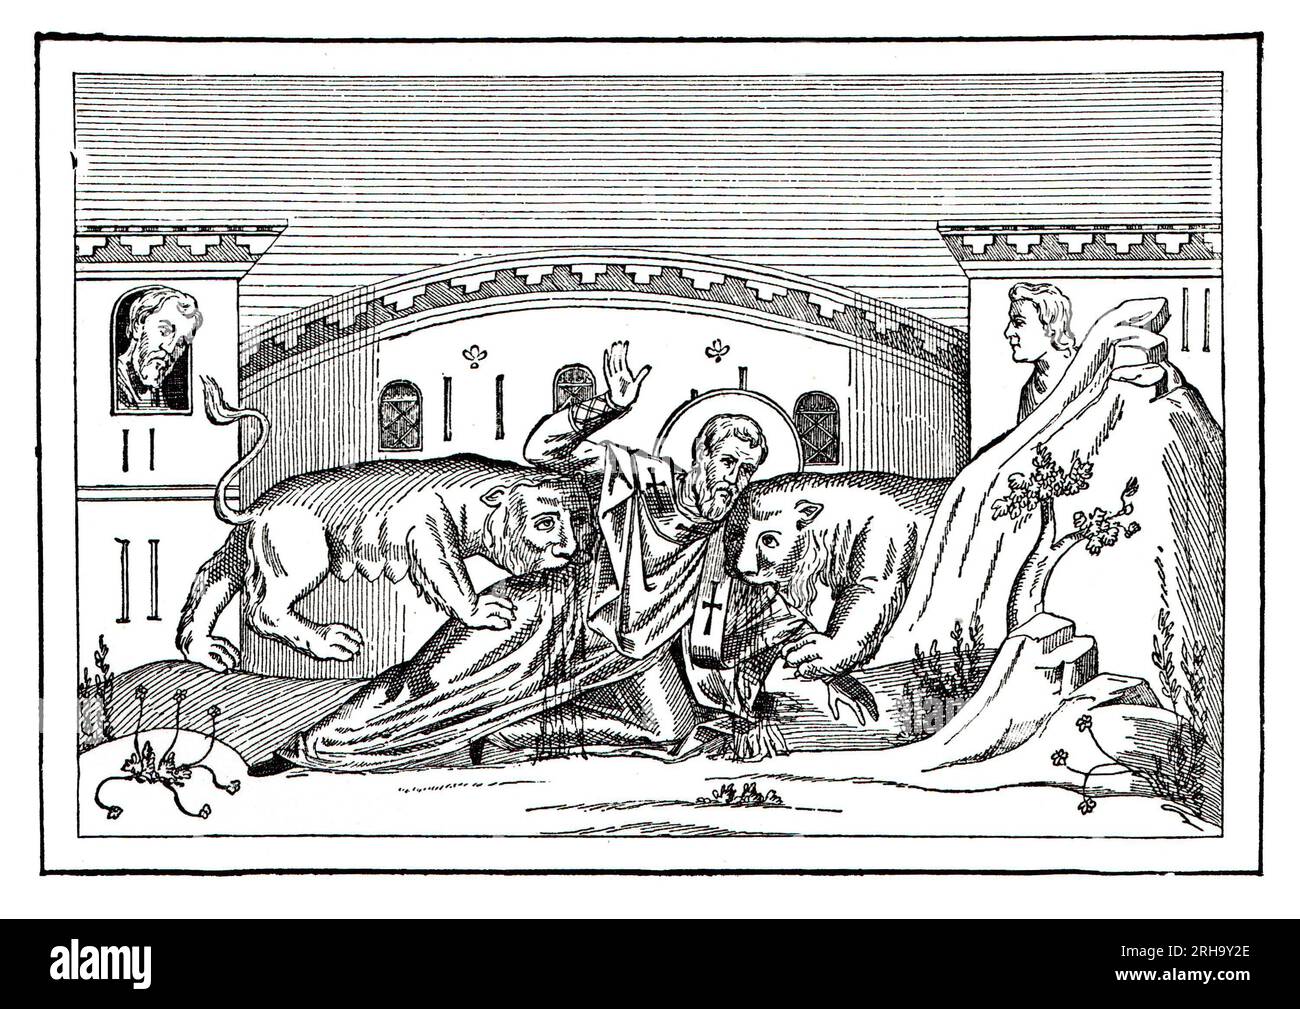 Das Martyrium des Heiligen Ignatius (den Bestien zugeworfen), das im Kolosseum in Rom stattfand, laut John Chrysostom über das Leben des Heiligen Ignatius. Gravur aus dem Leben der Heiligen von Sabin Baring-Gould. Stockfoto